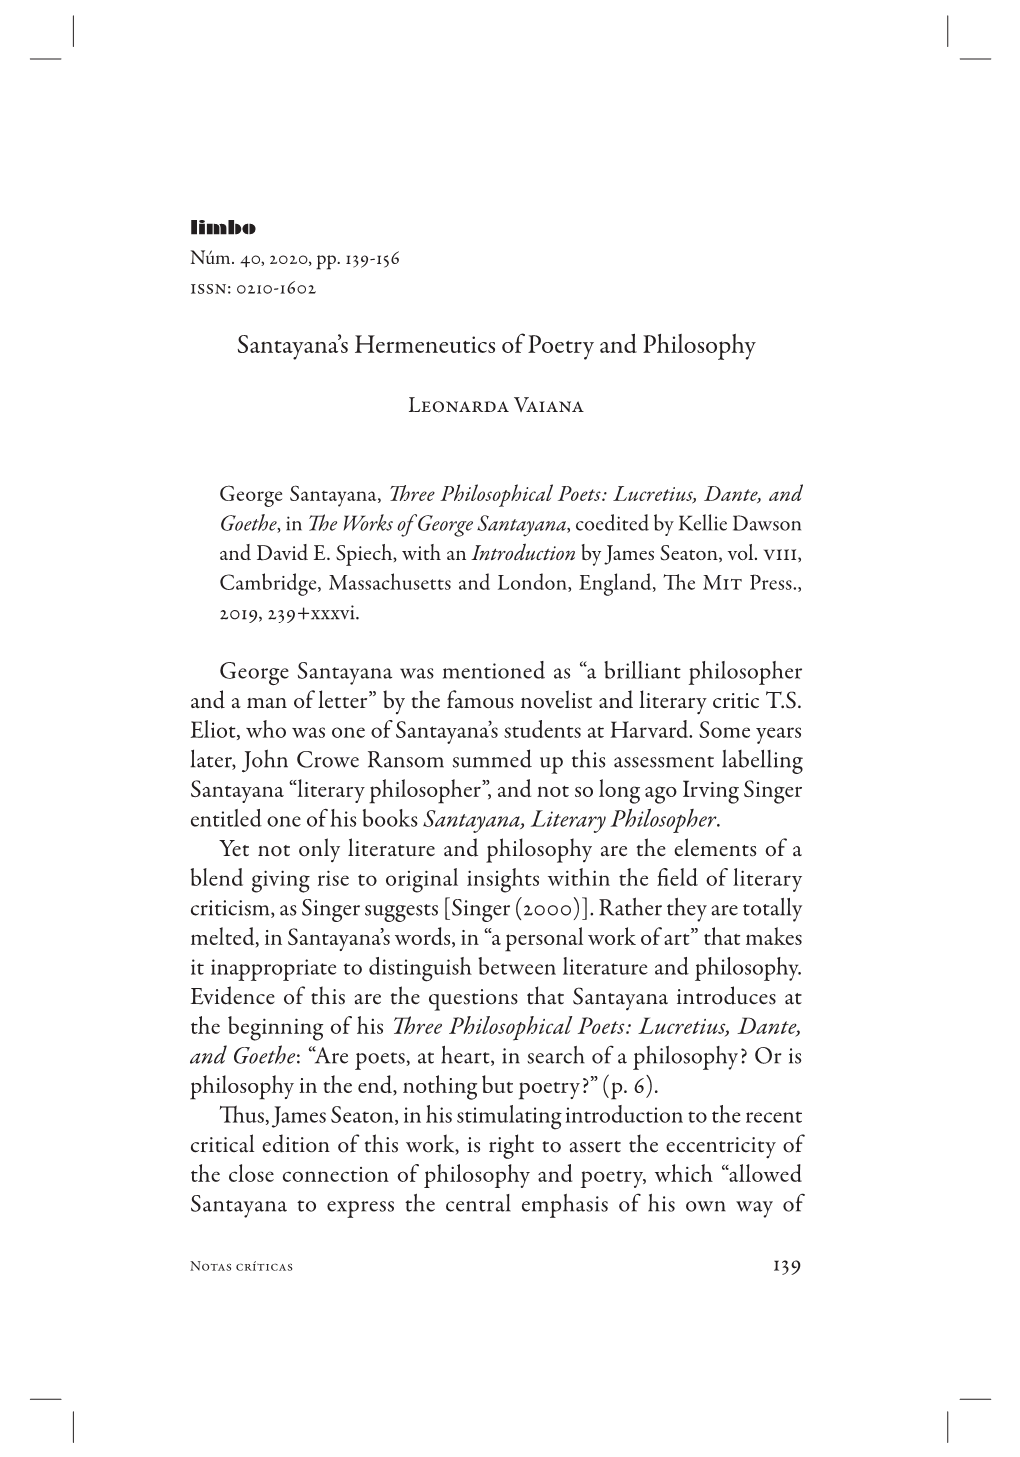 Santayana's Hermeneutics of Poetry and Philosophy